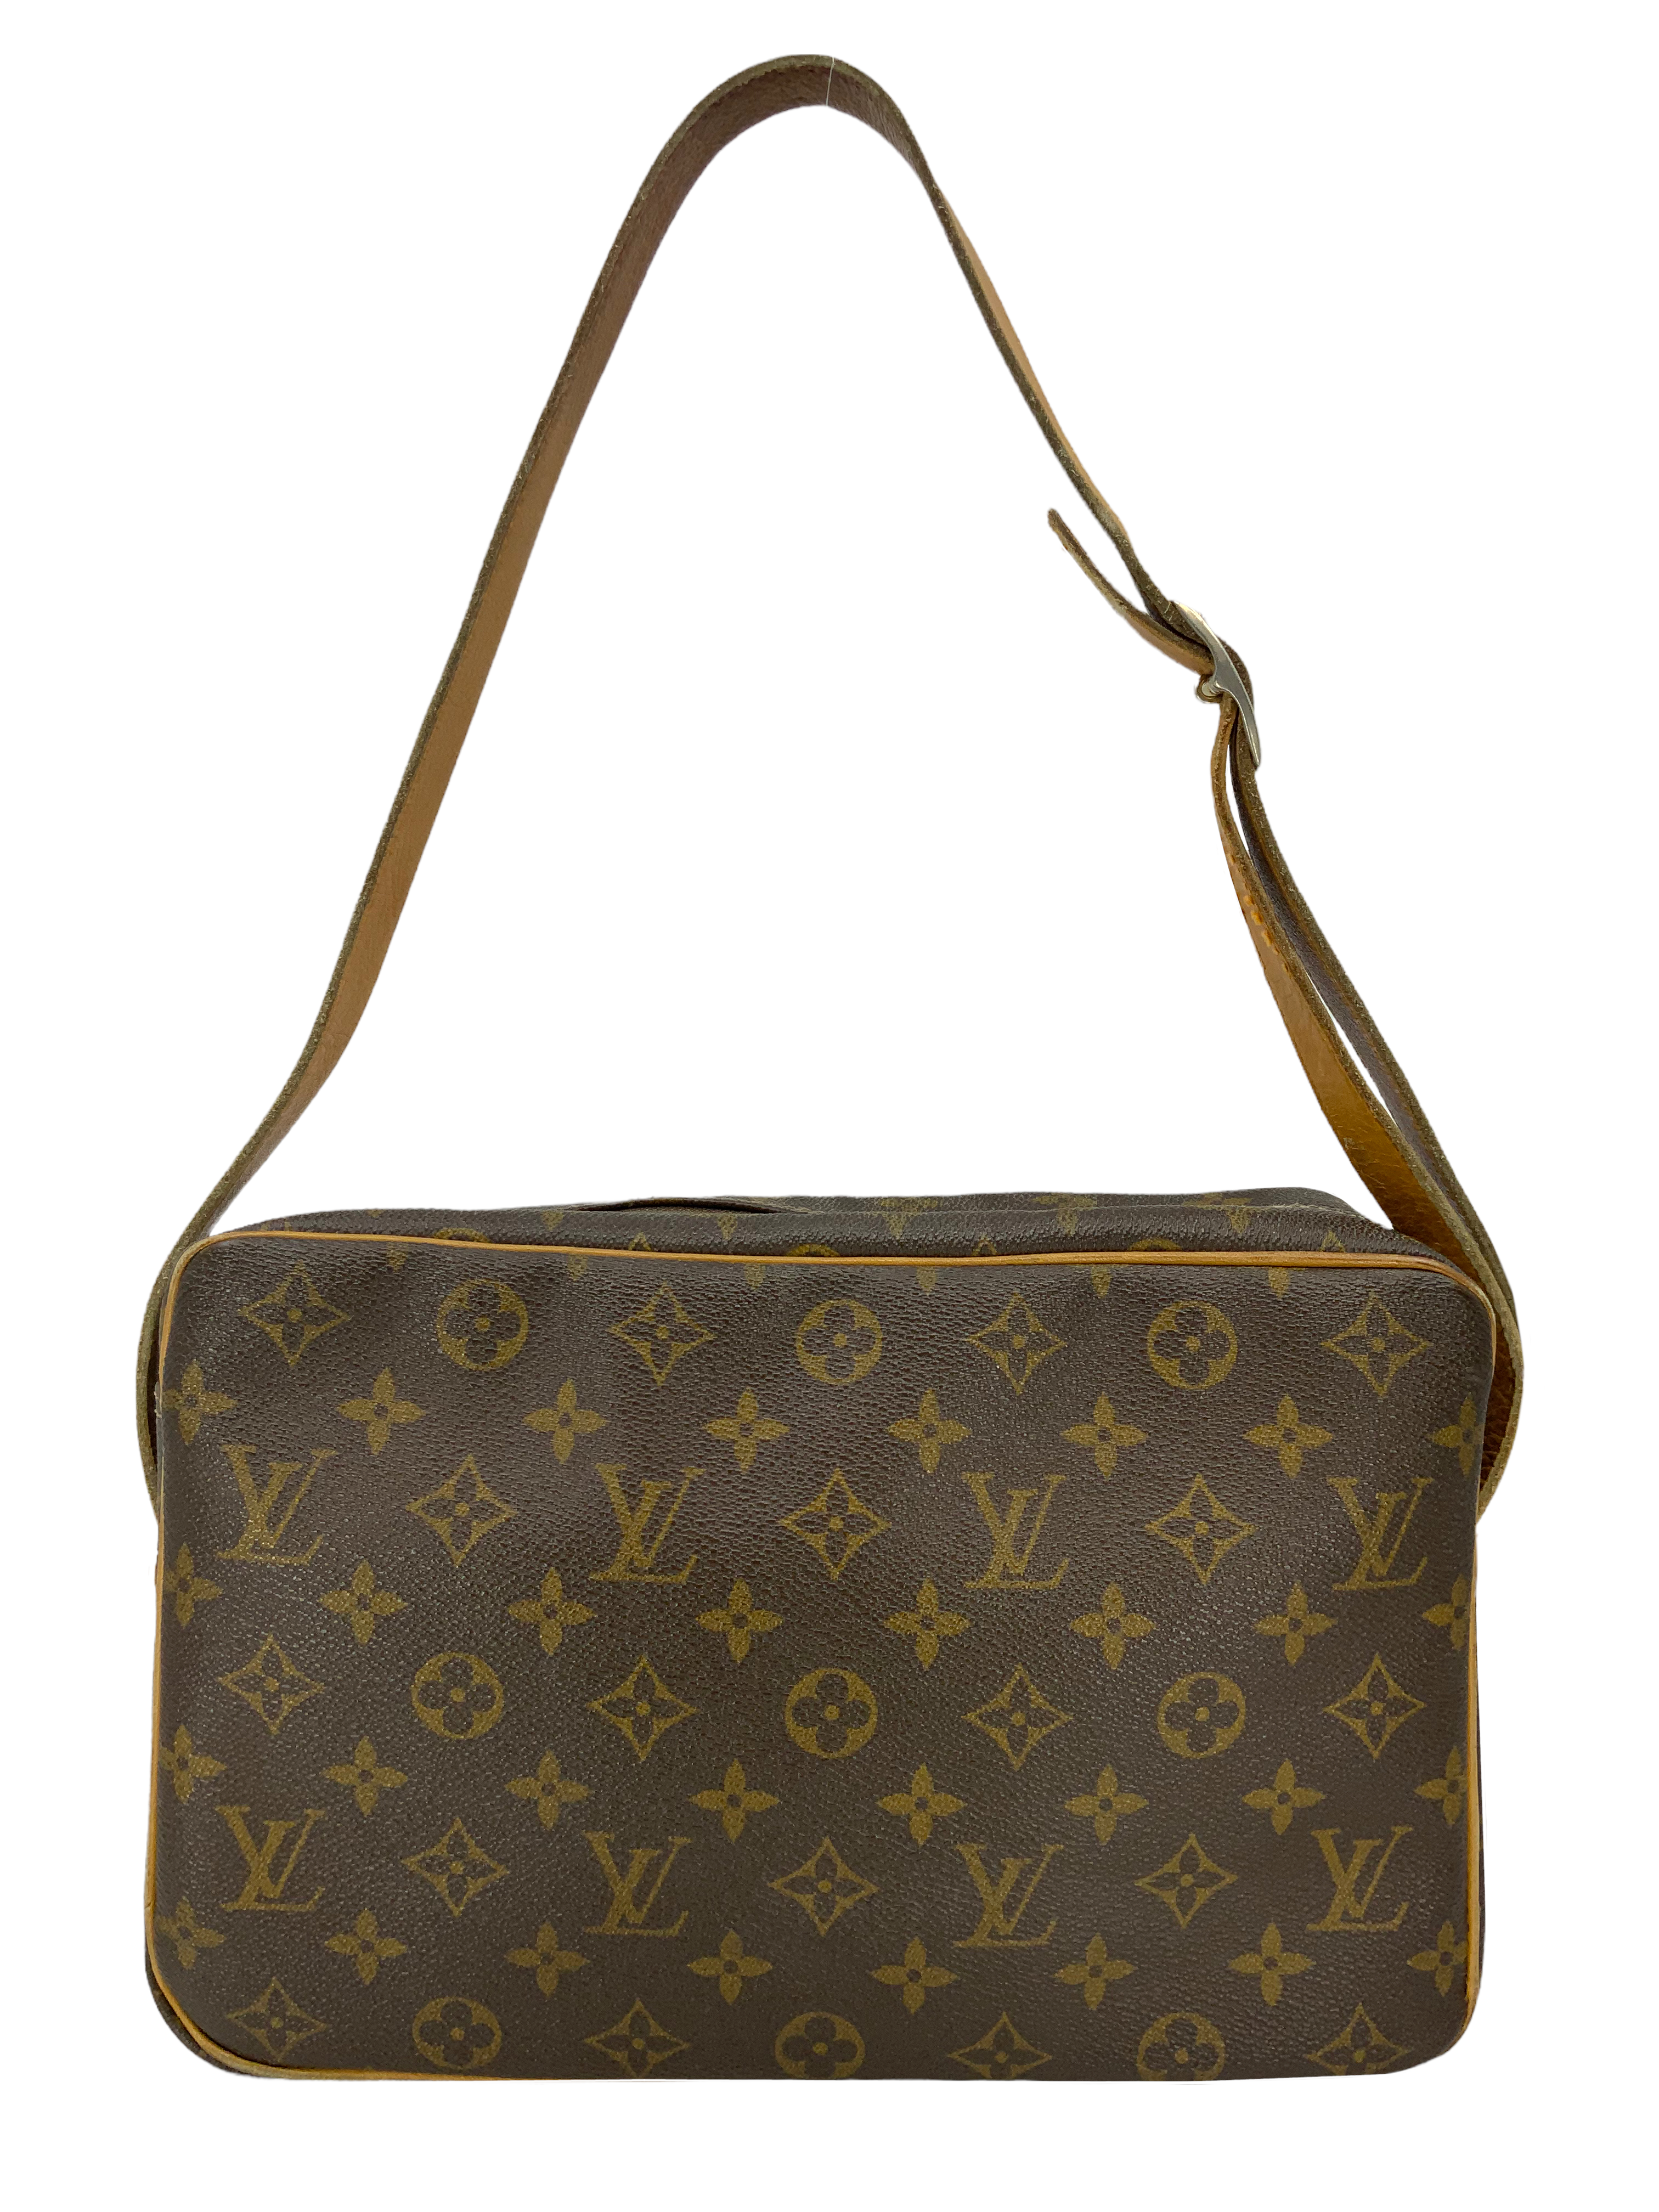 LOUIS VUITTON Monogram Sac Bandouliere Shoulder Bag Vintage M51362 Auth  ti1030